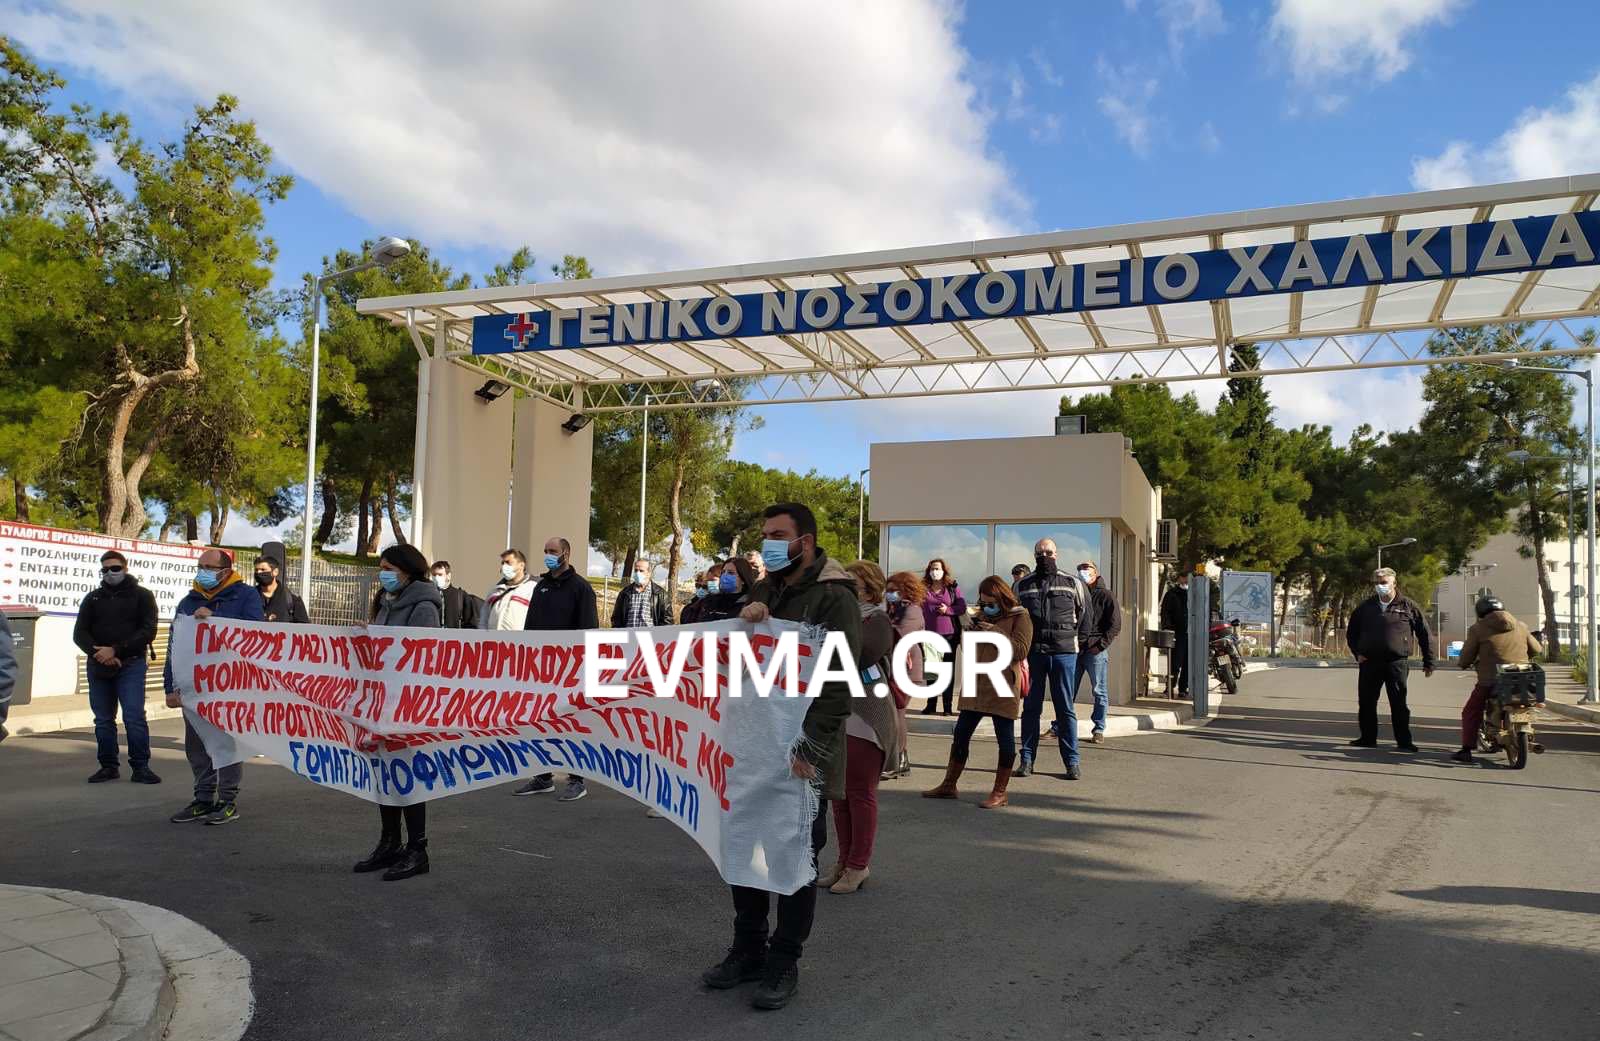 Σε συγκέντρωση διαμαρτυρίας προχωρά ο Σύλλογος Εργαζομένων του Γ.Ν. Χαλκίδας